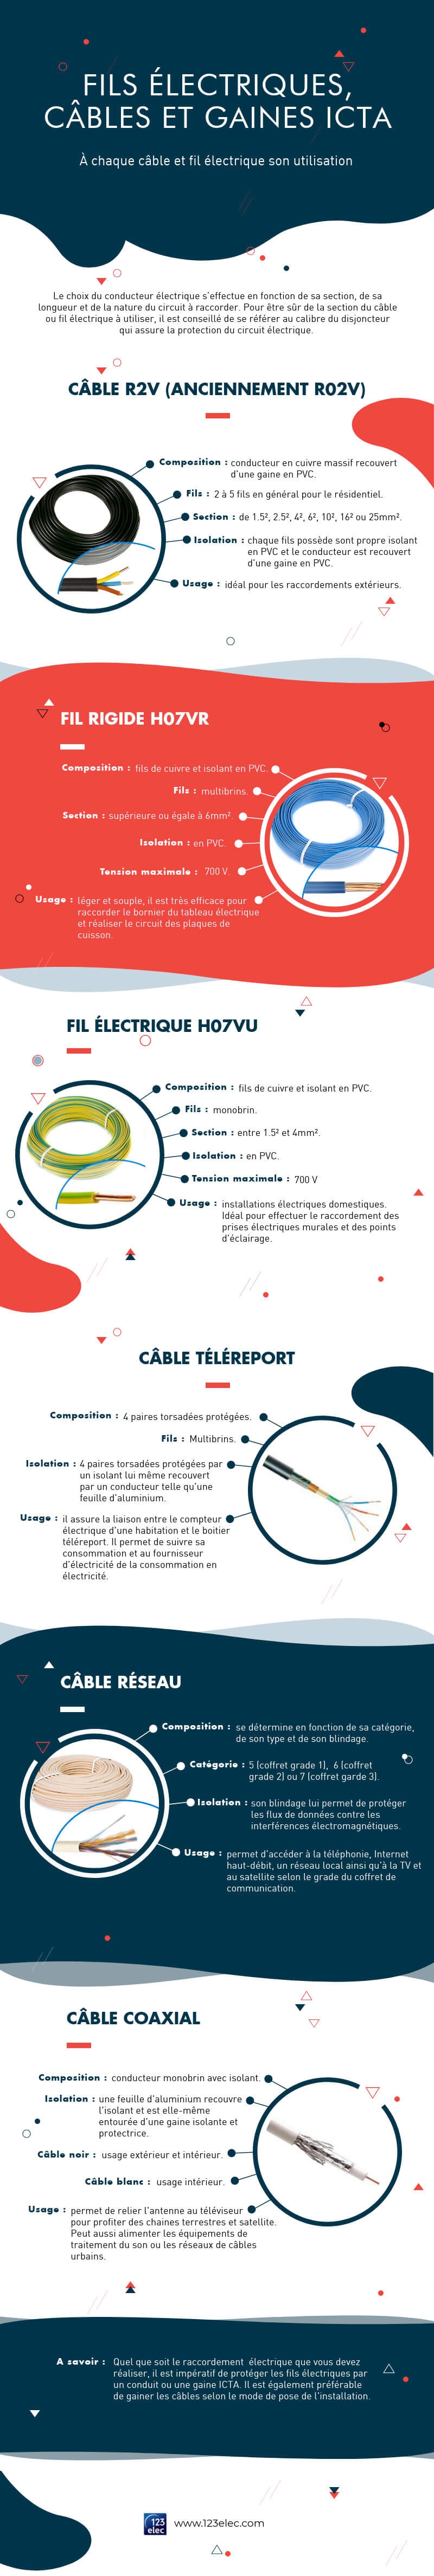 Infographie sur "Quel câble électrique et fil électrique utiliser ?"